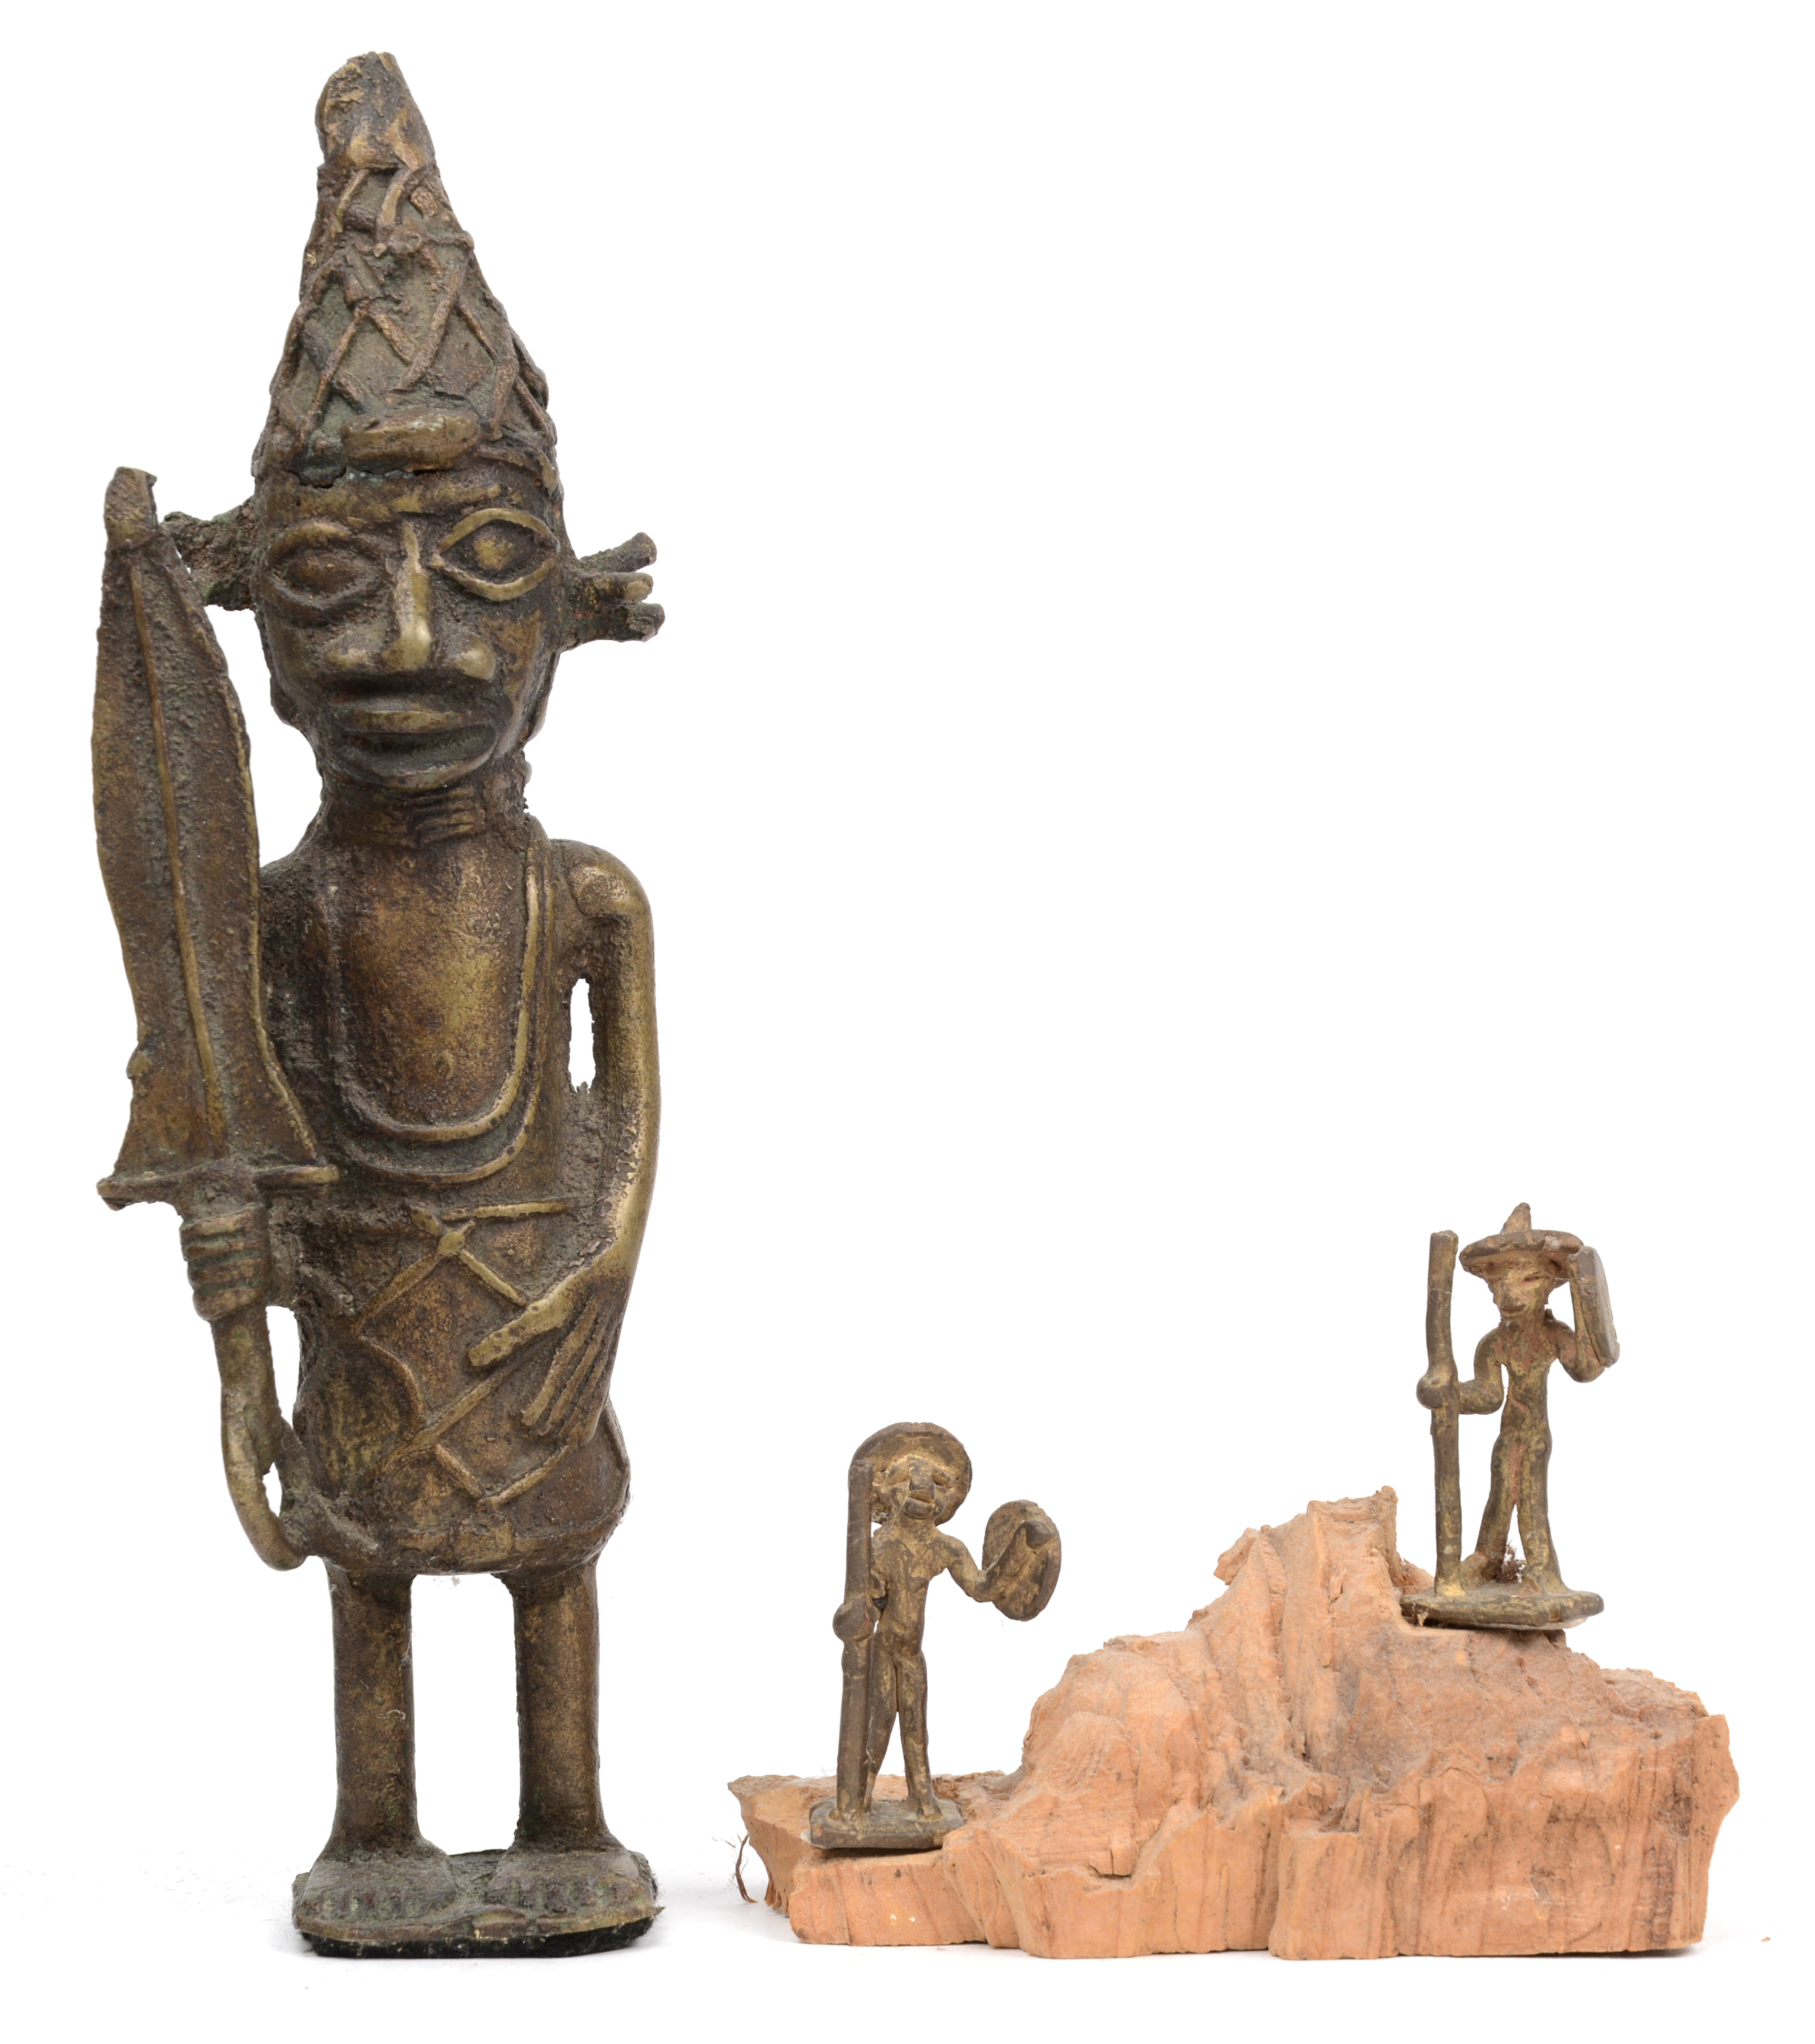 Heerlijk Blokkeren Verhuizer Drie bronzen beeldjes, waarbij twee miniatuur op houten voetstukje en een  groter beeldje van een krijger. Benin. – Jordaens N.V. Veilinghuis